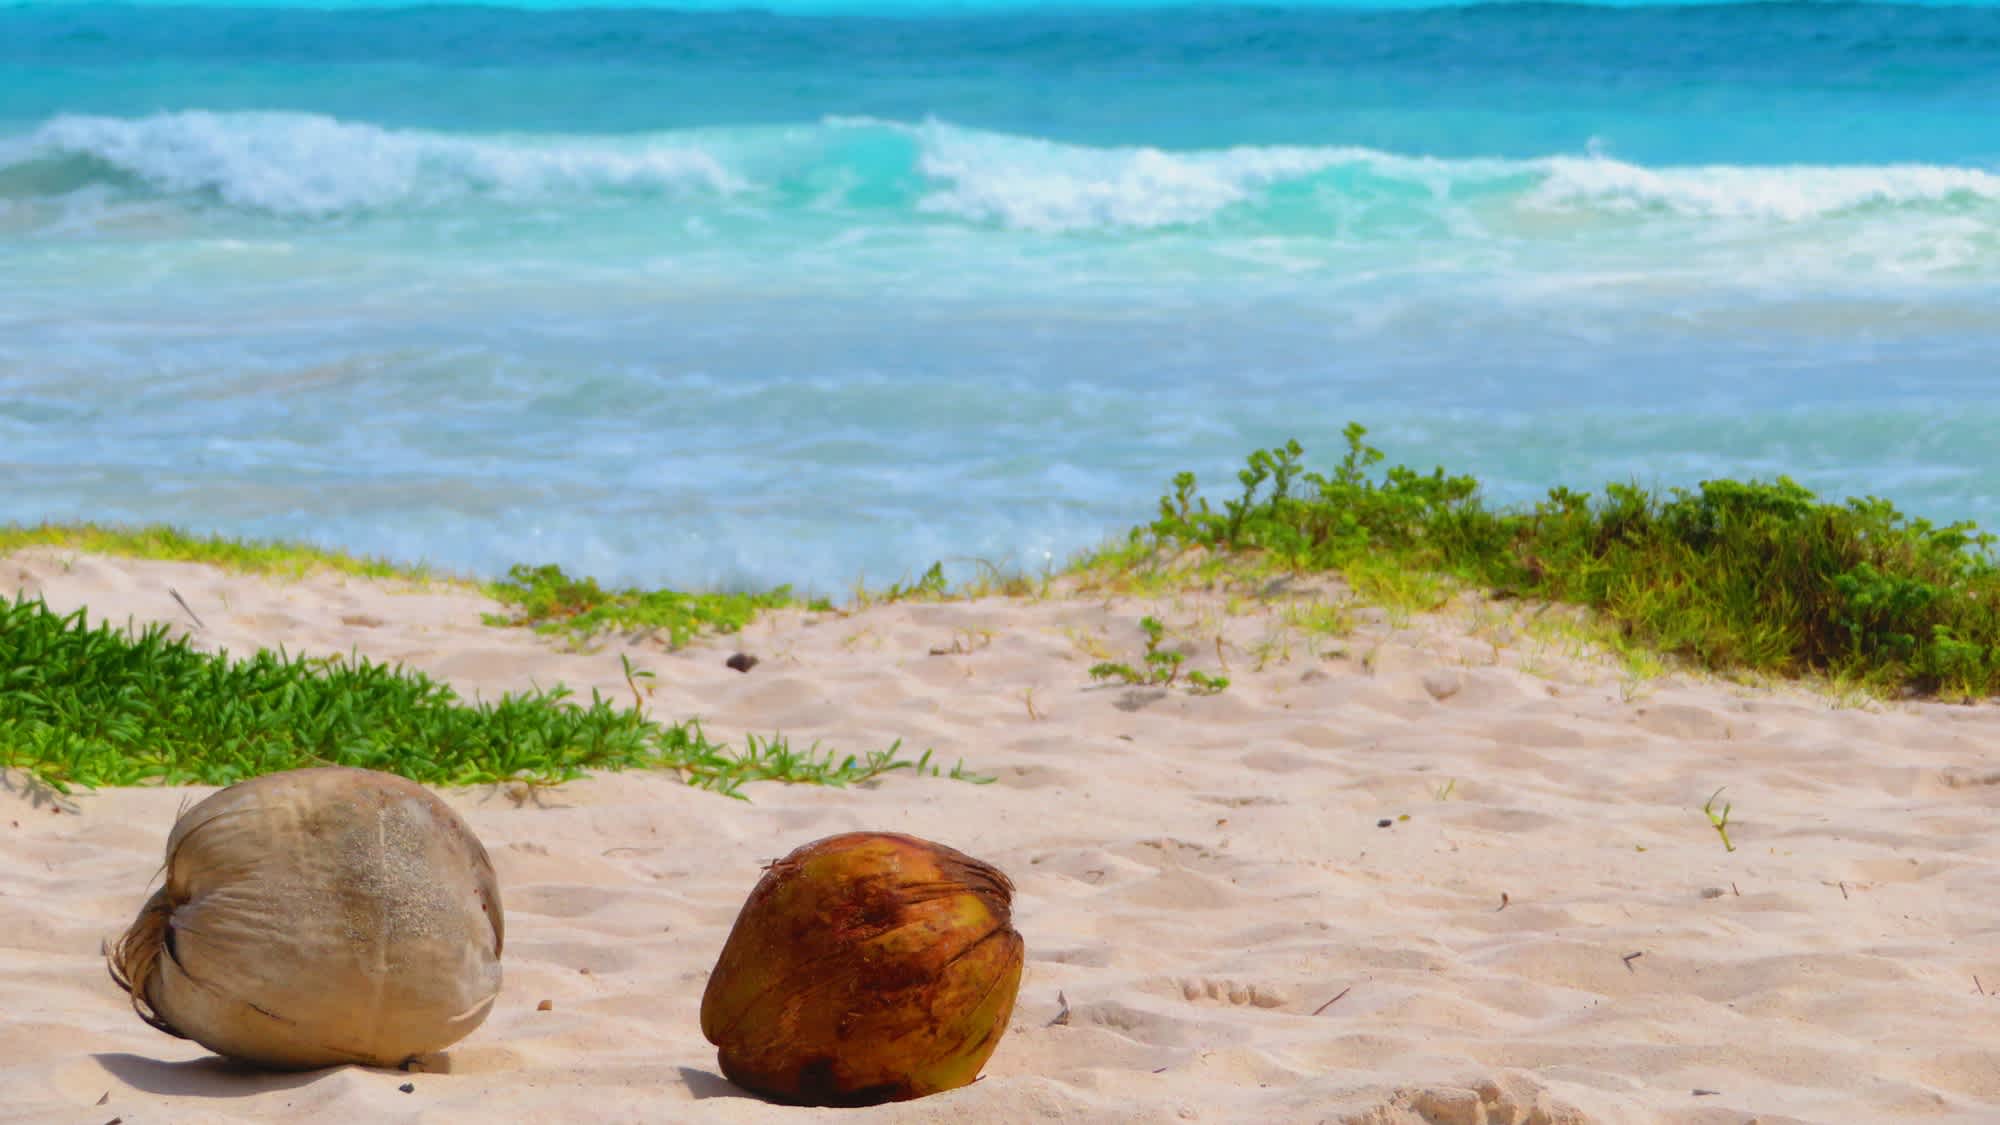 Kokosnüsse übersäen die Sanddünen des Xpu-Ha-Strandes an der Riviera Maya